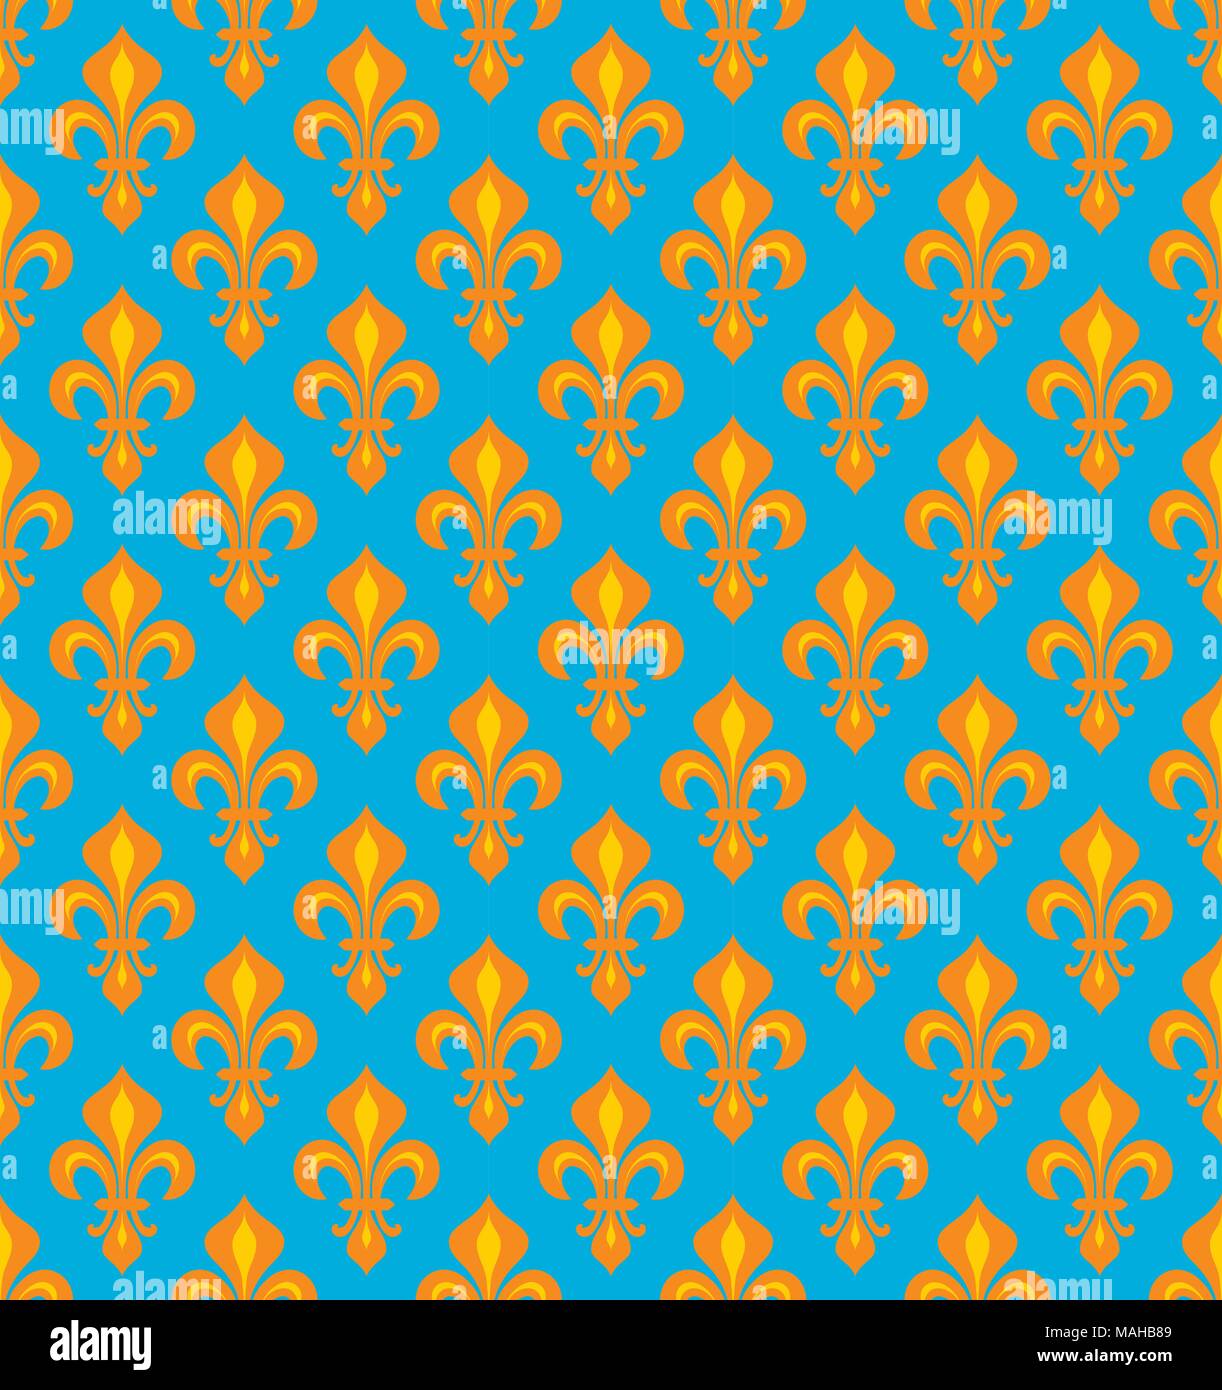 Royal gigli araldici (Fleur de Lis) - Gioiosa cerulean azzurro ciano/orange velvet, seamless pattern, sfondo. Illustrazione Vettoriale